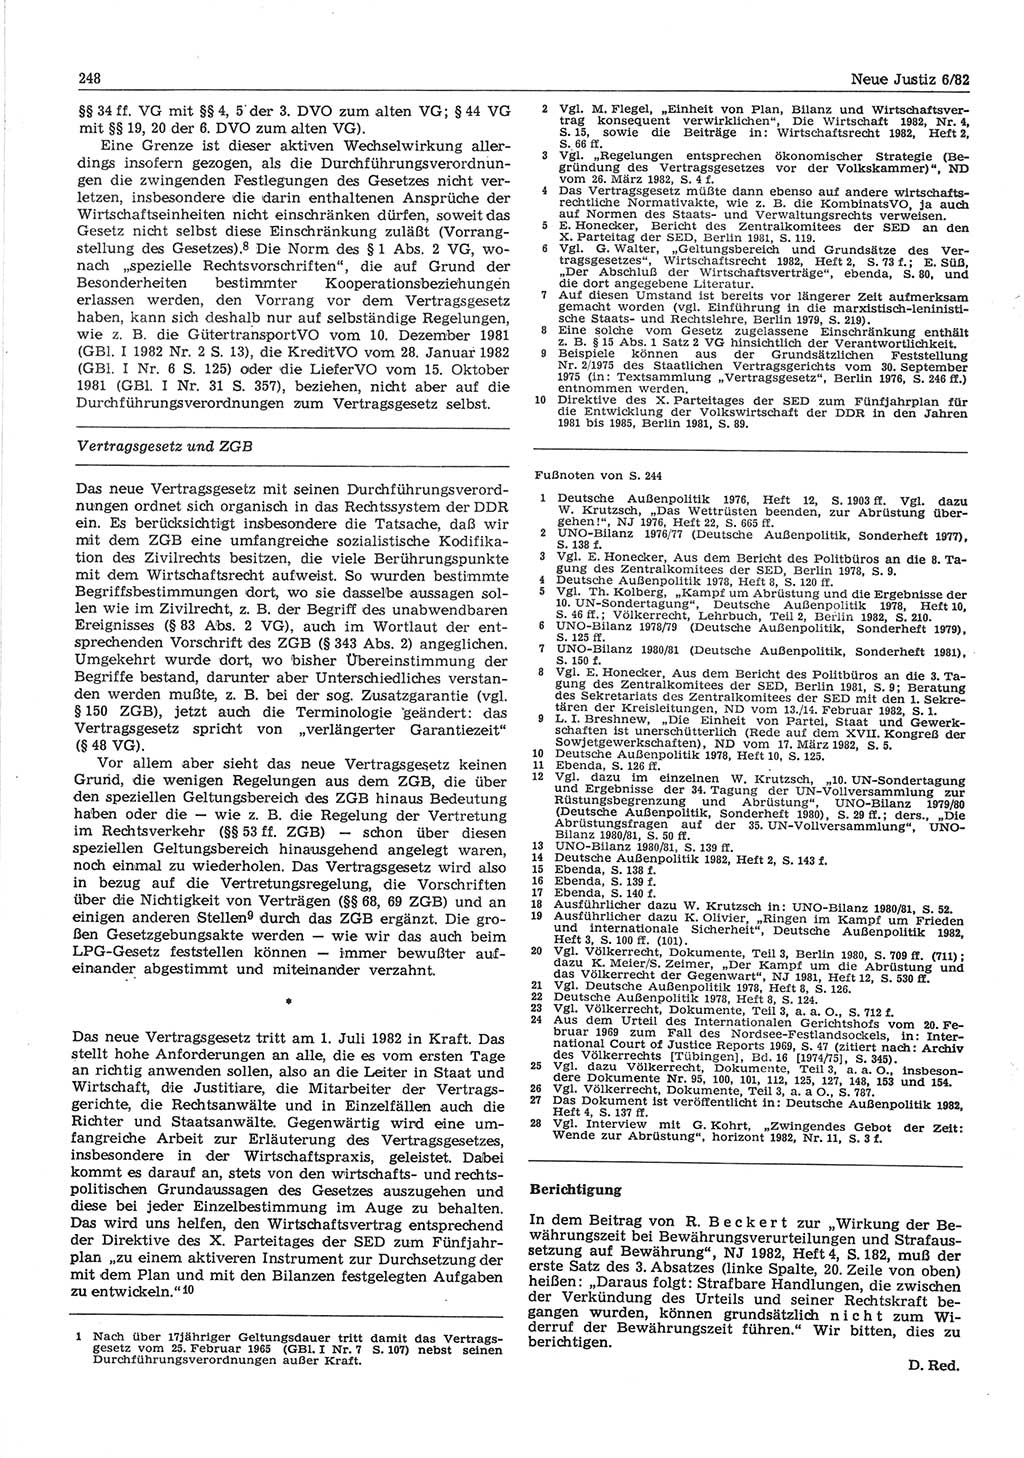 Neue Justiz (NJ), Zeitschrift für sozialistisches Recht und Gesetzlichkeit [Deutsche Demokratische Republik (DDR)], 36. Jahrgang 1982, Seite 248 (NJ DDR 1982, S. 248)